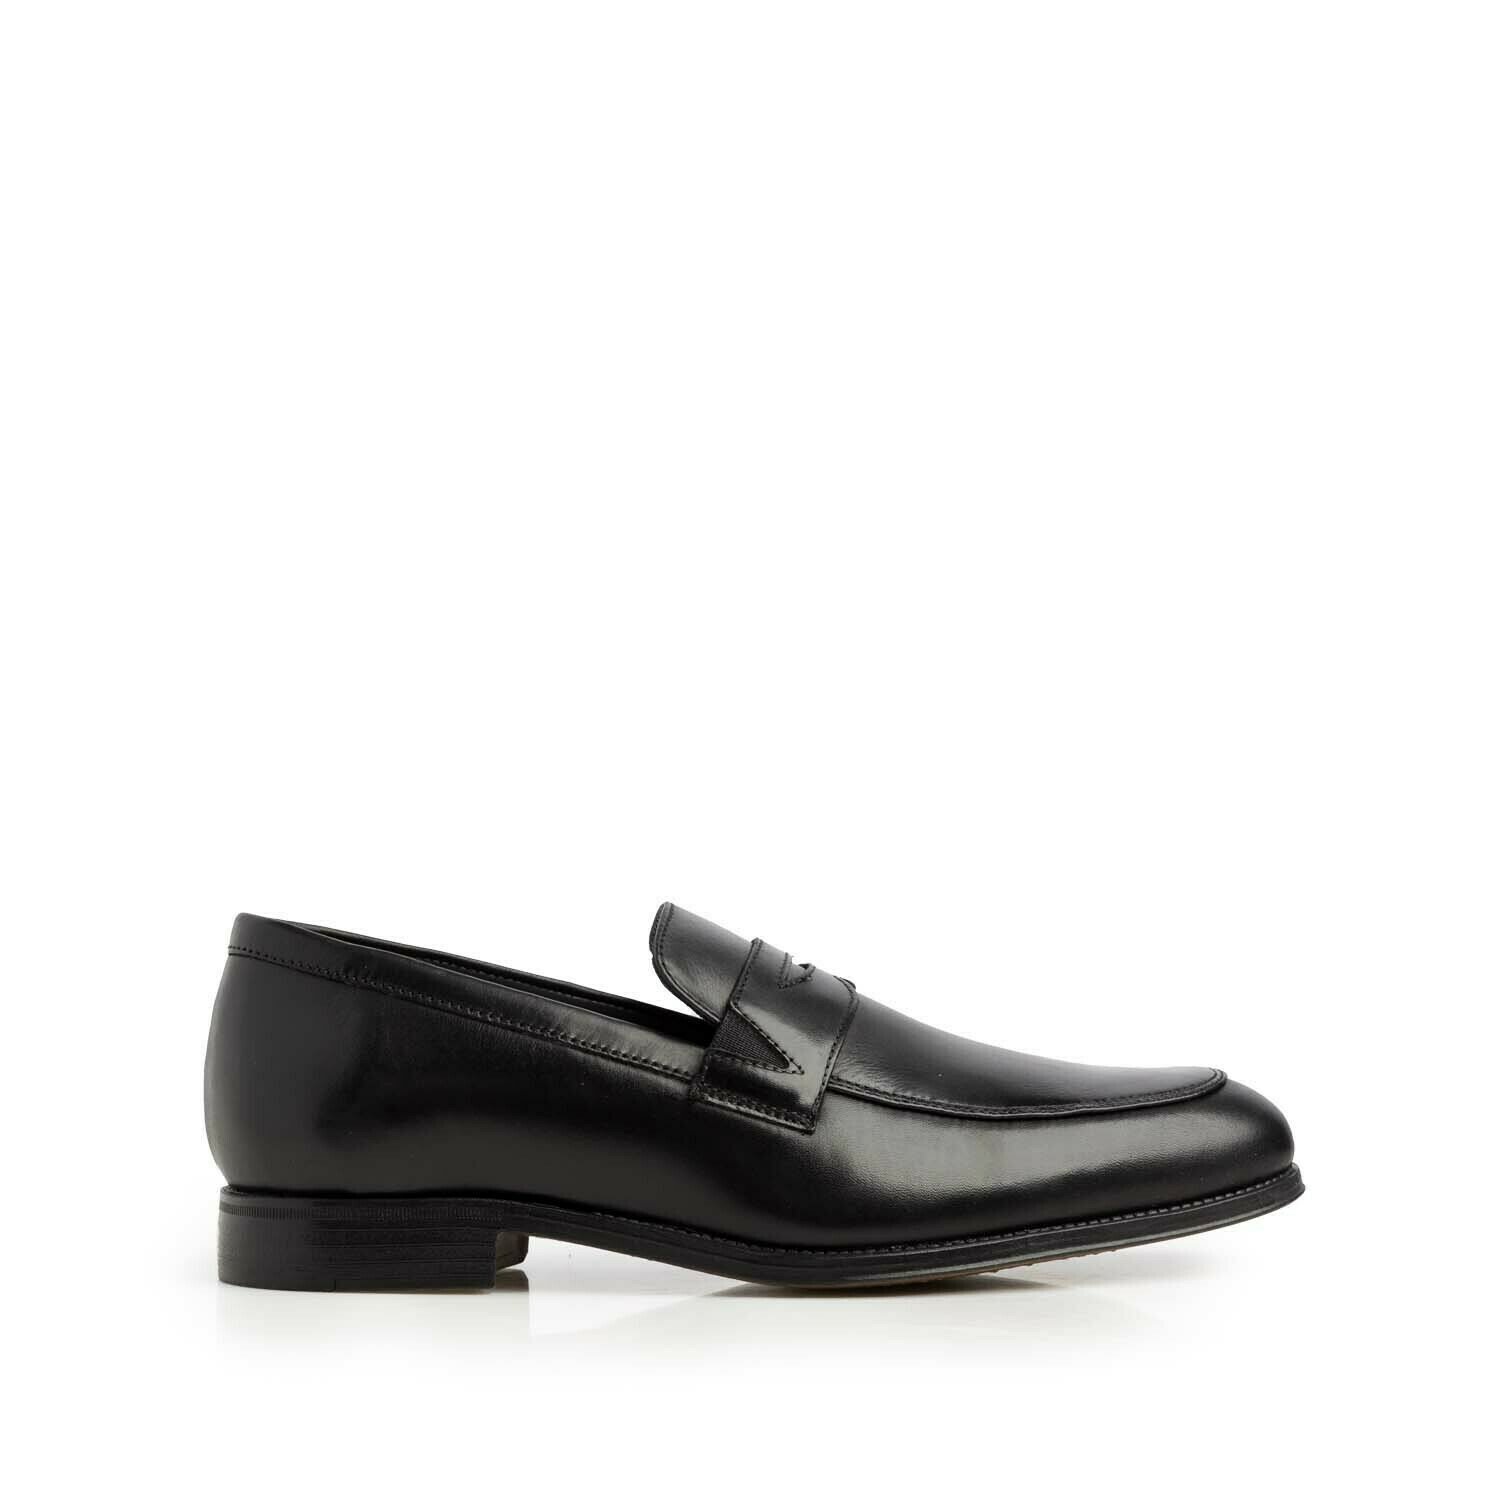 Pantofi eleganți bărbați din piele naturală, Leofex - 723 Negru Box